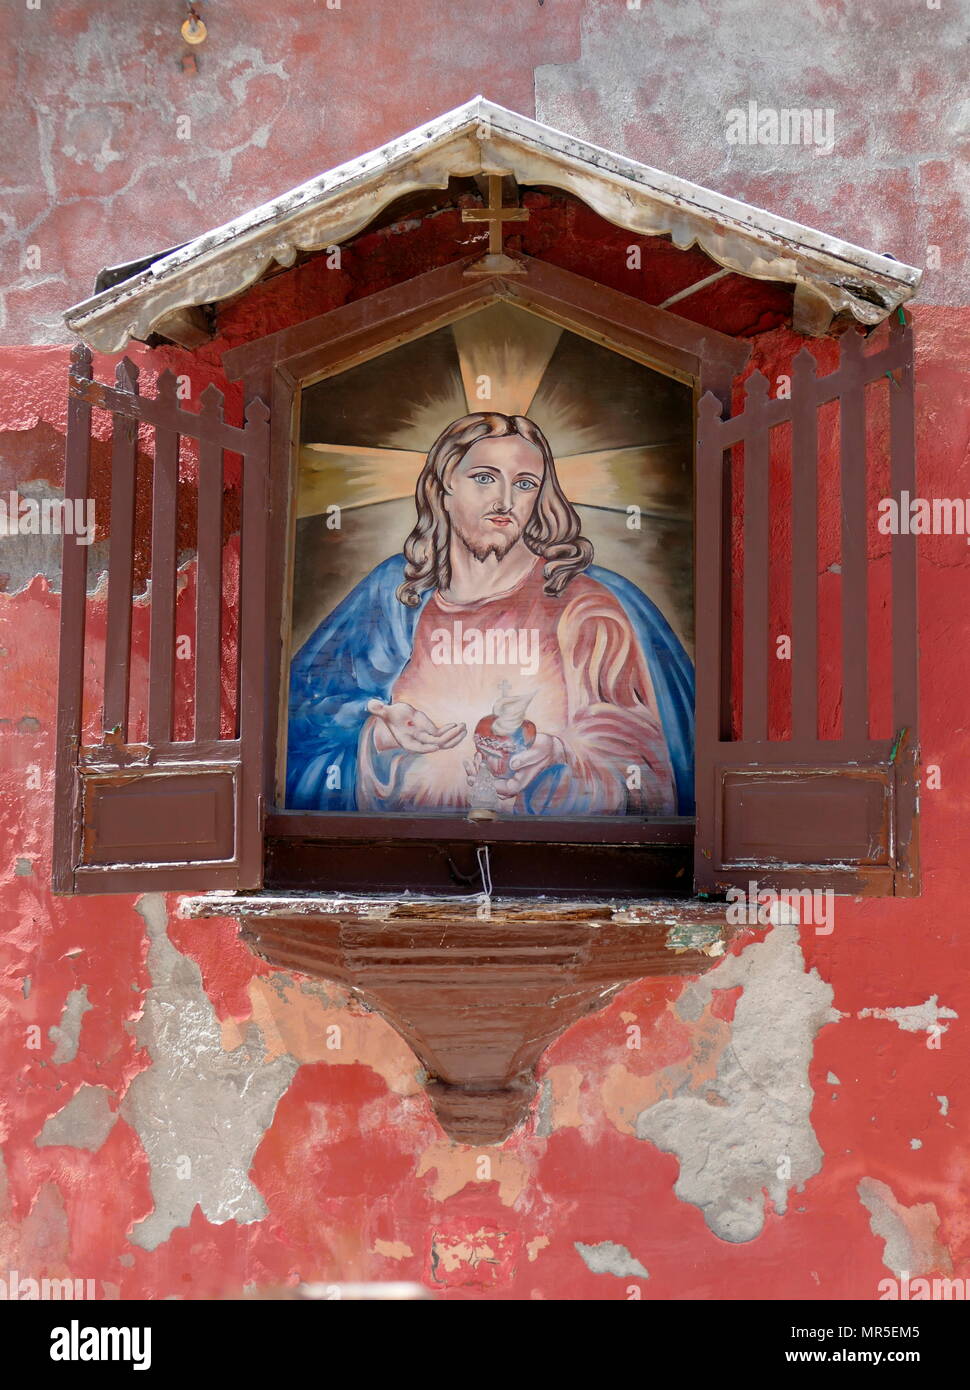 Santuario di strada che raffigura Gesù Cristo. Venezia, Quartiere Arsenale, Italia Foto Stock